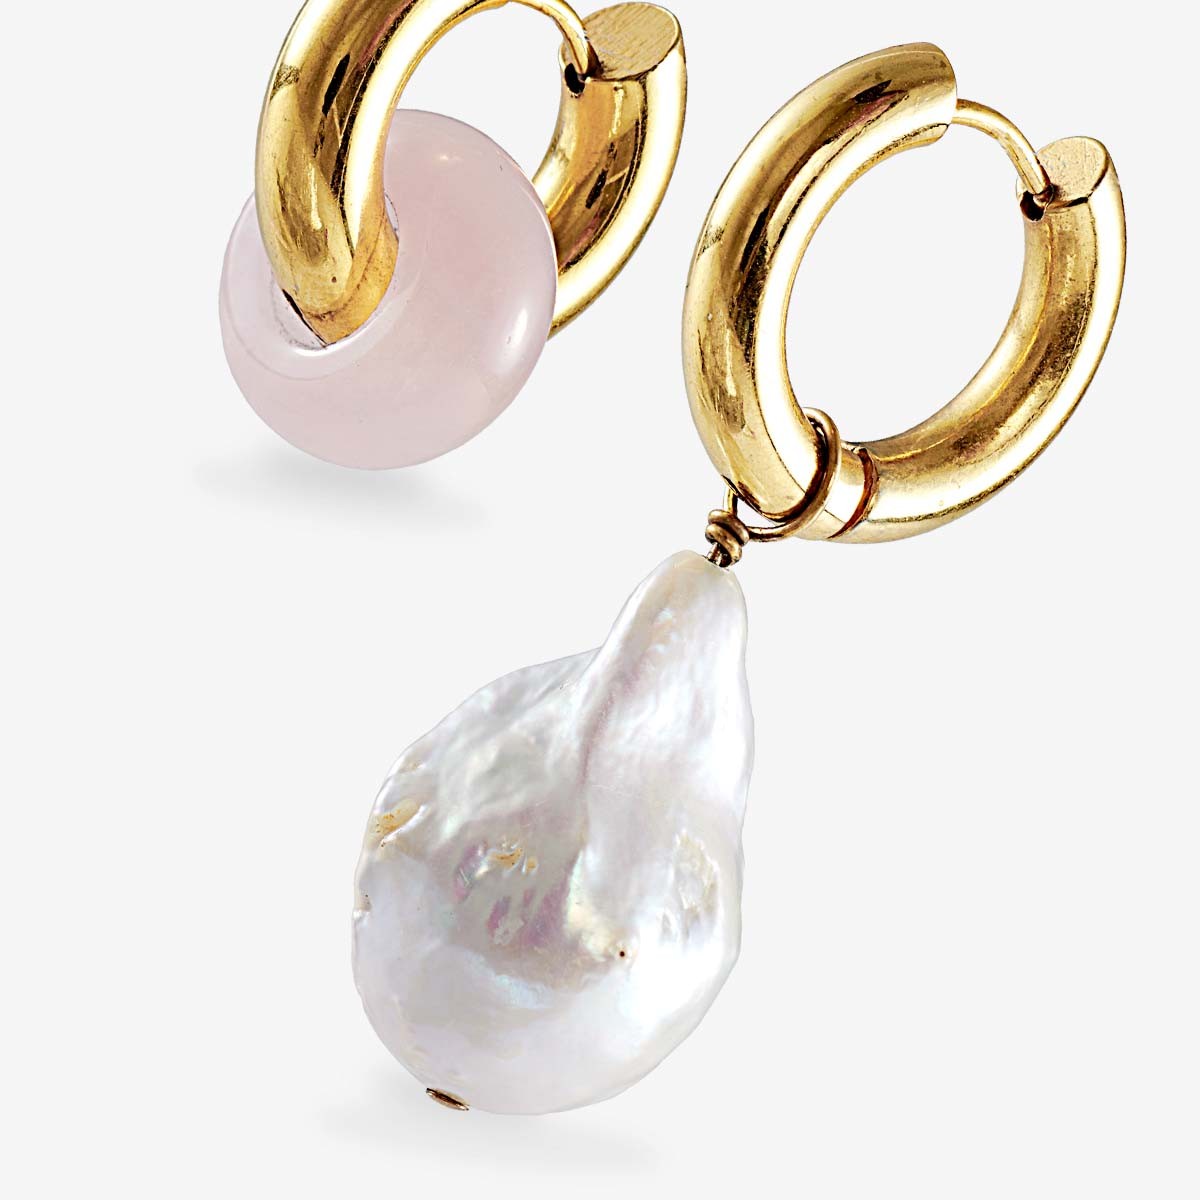 Baroque pearl and rose quartz earrings - Perlenohrringe - 24k vergoldet